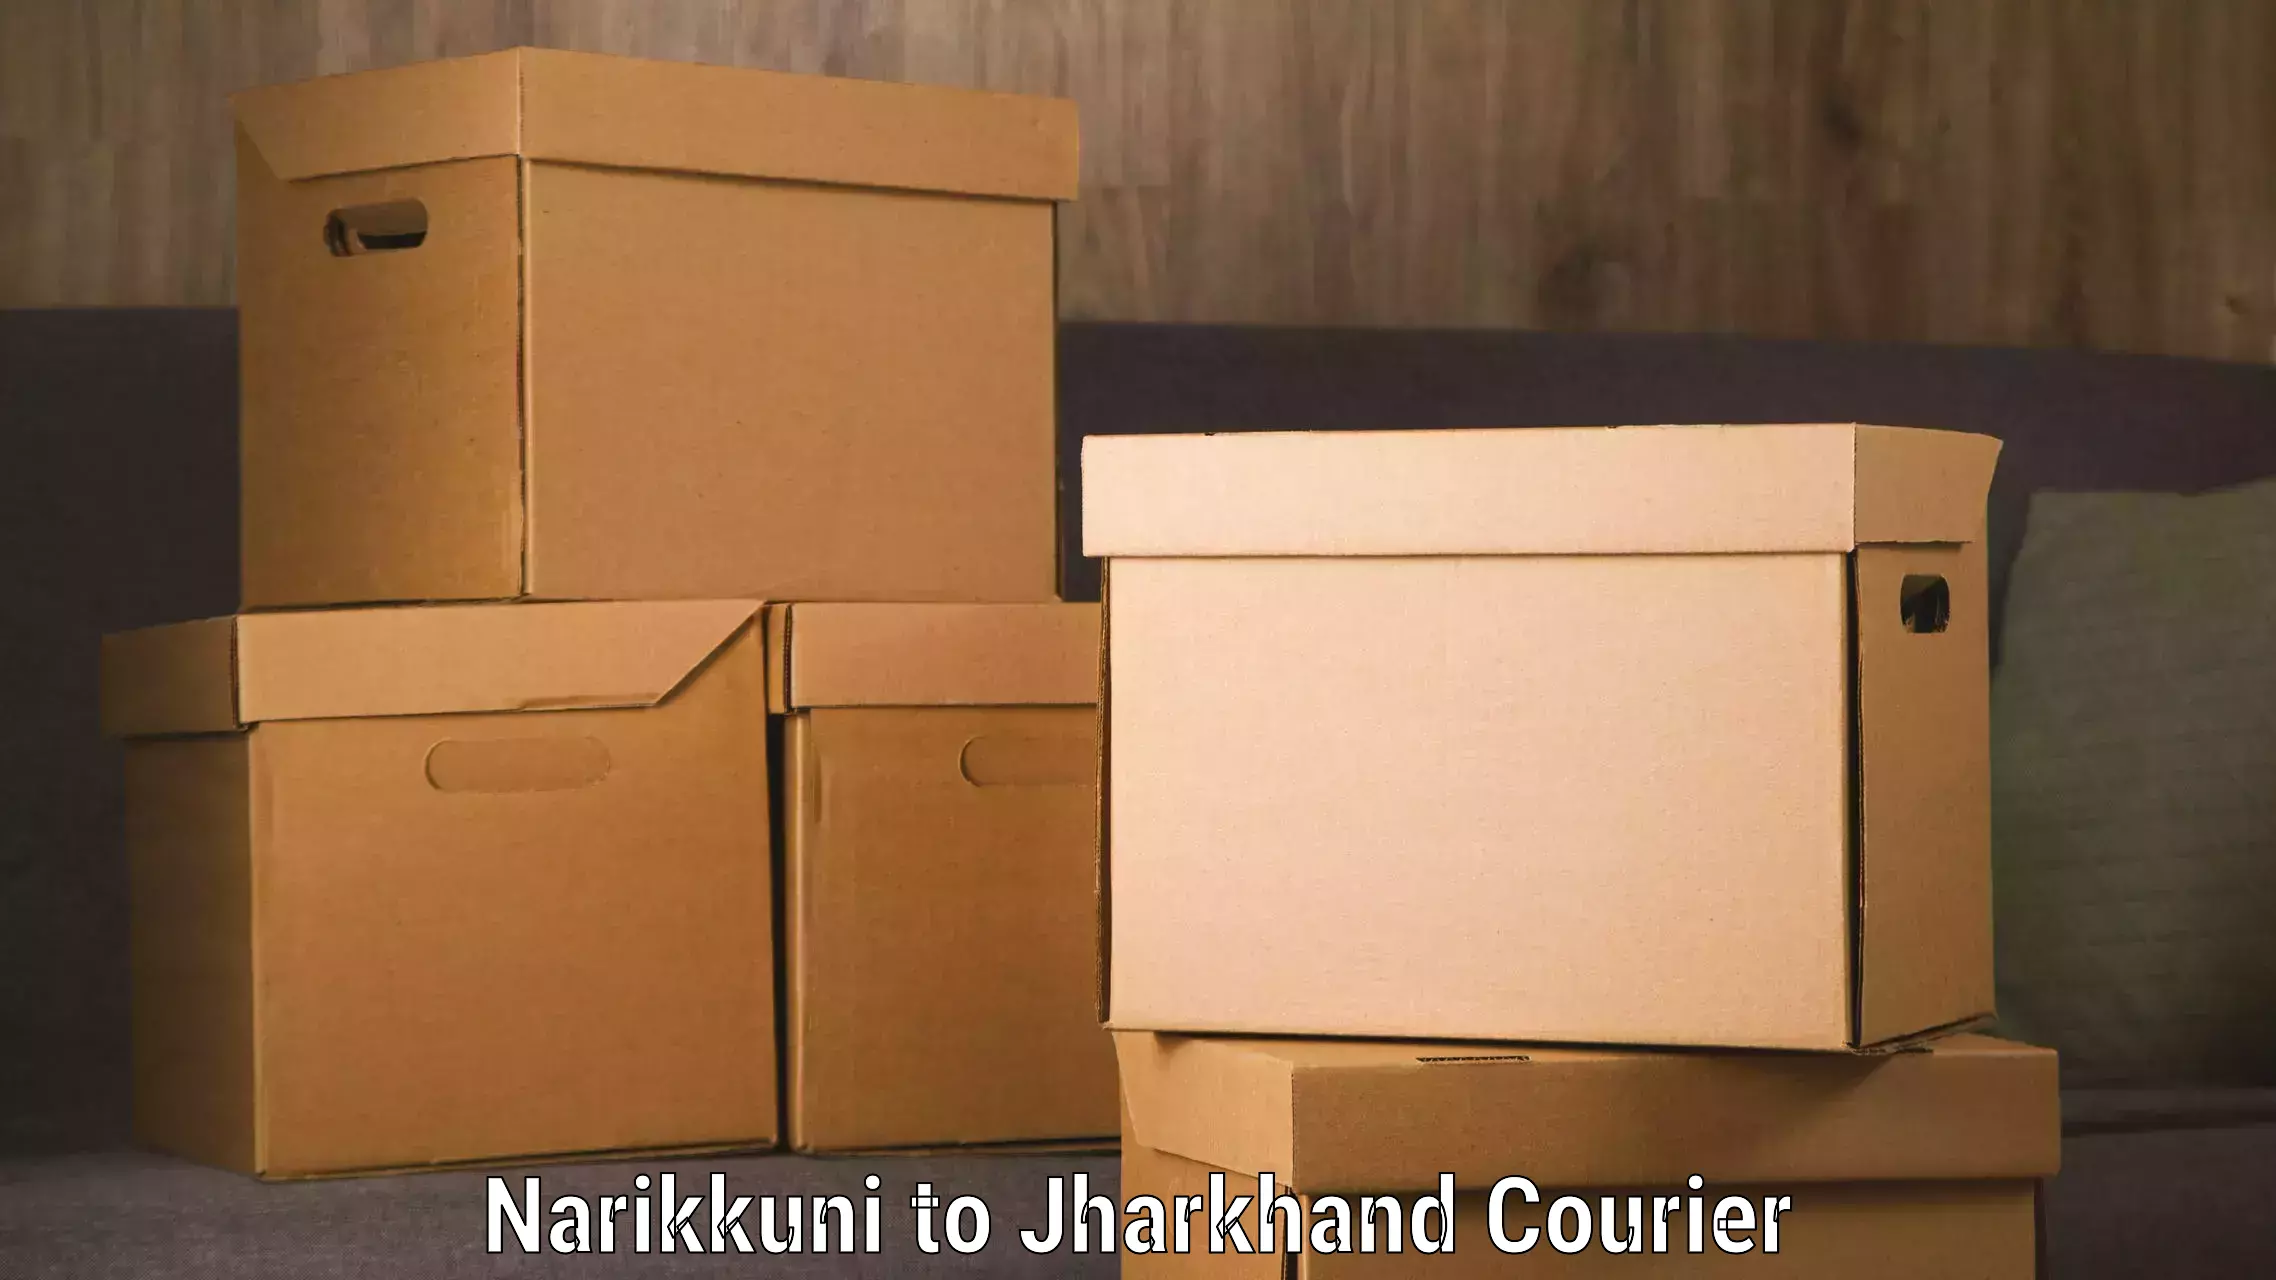 Optimized delivery routes Narikkuni to Shikaripara